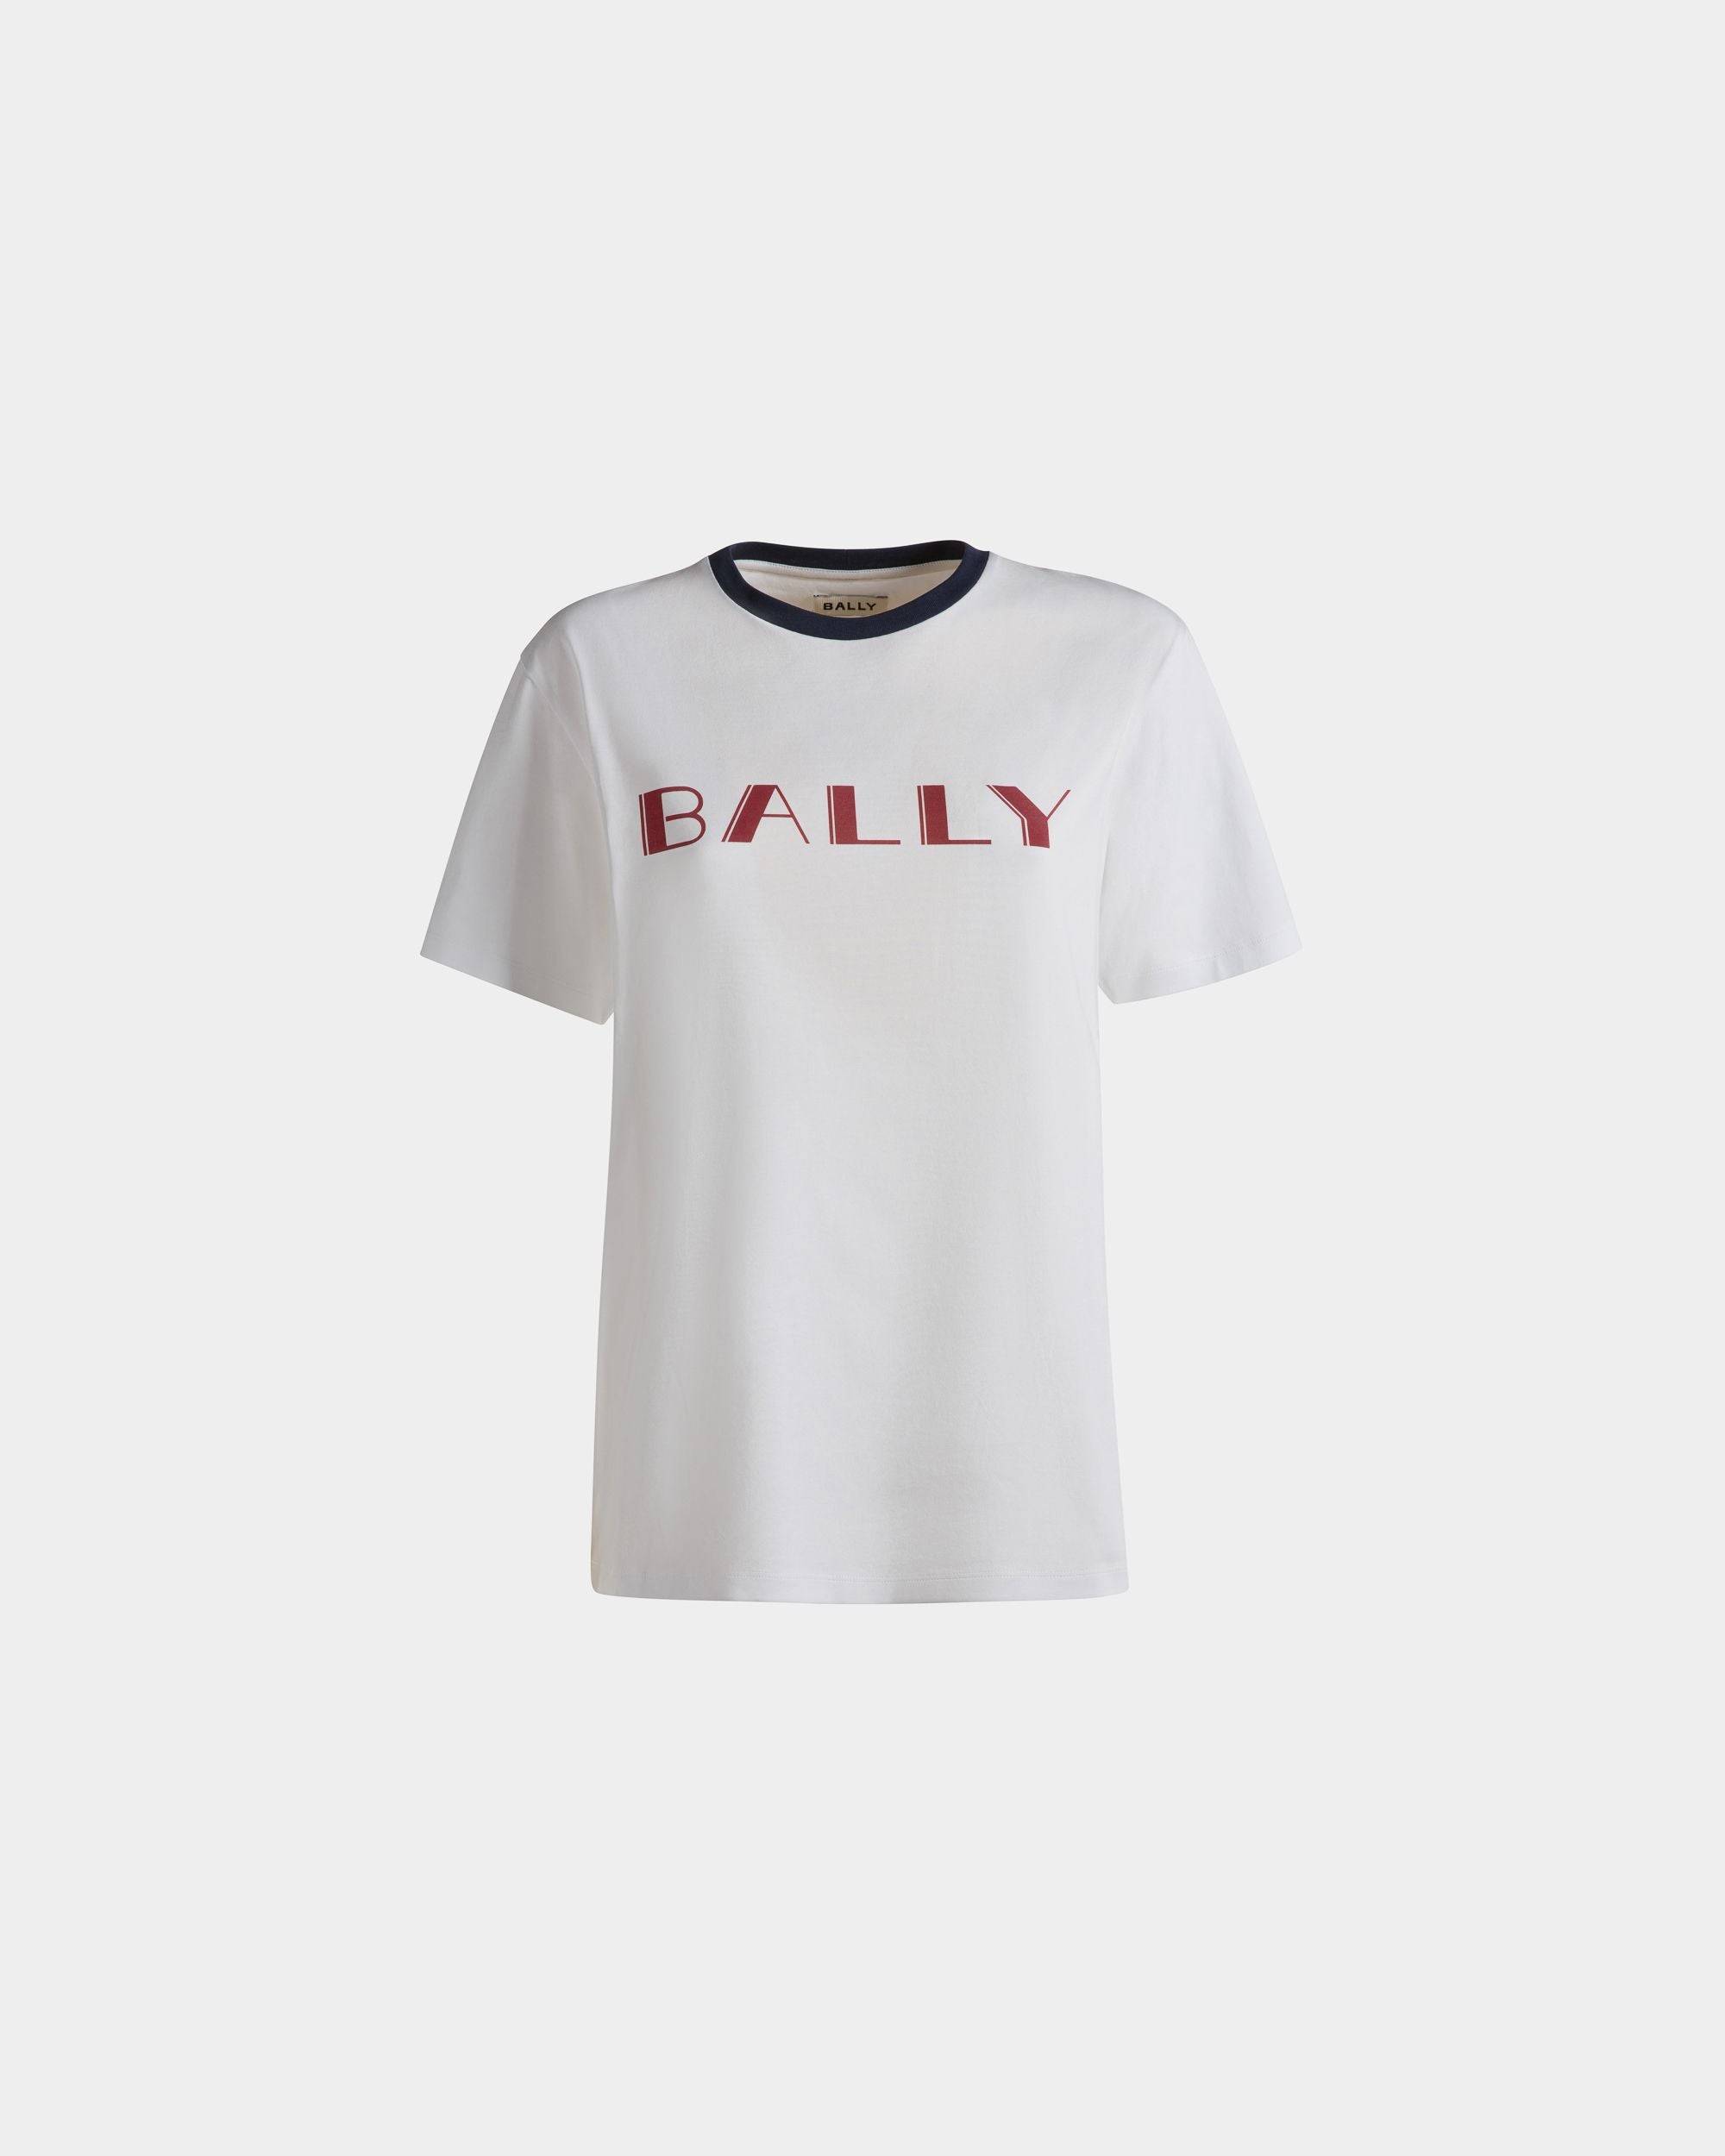 Summer Capsule T-Shirt Aus Weißer Baumwolle - Damen - Bally - 01